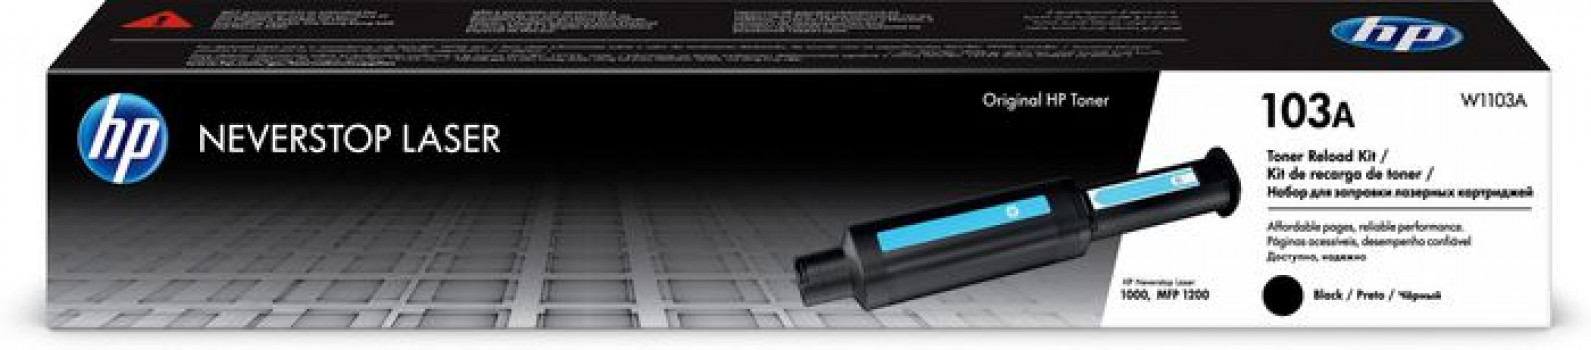 HP 103A Black Original Neverstop Laser Toner Reload Kit - Black | W1103A